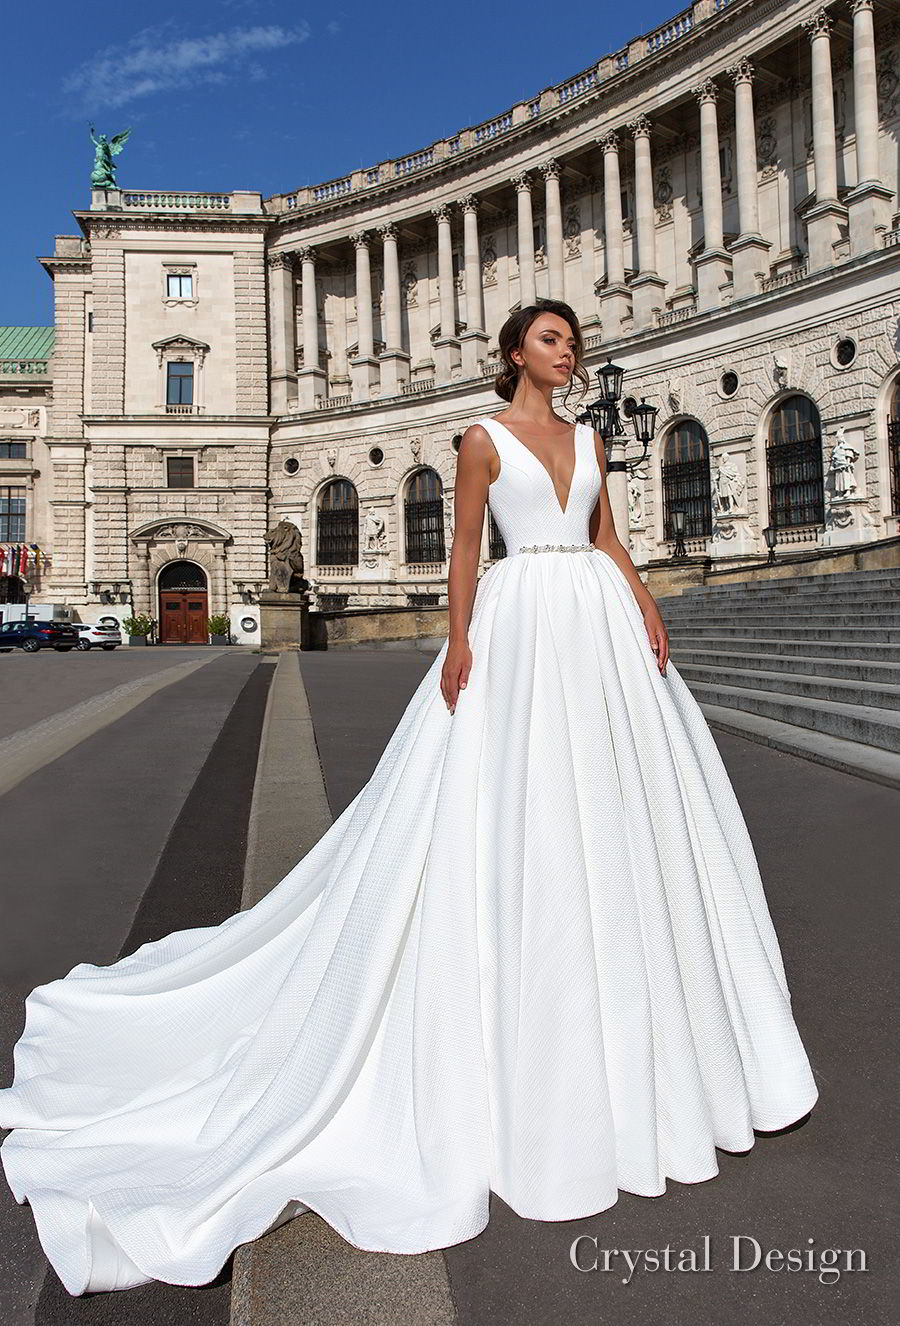 new wedding gown design 2018